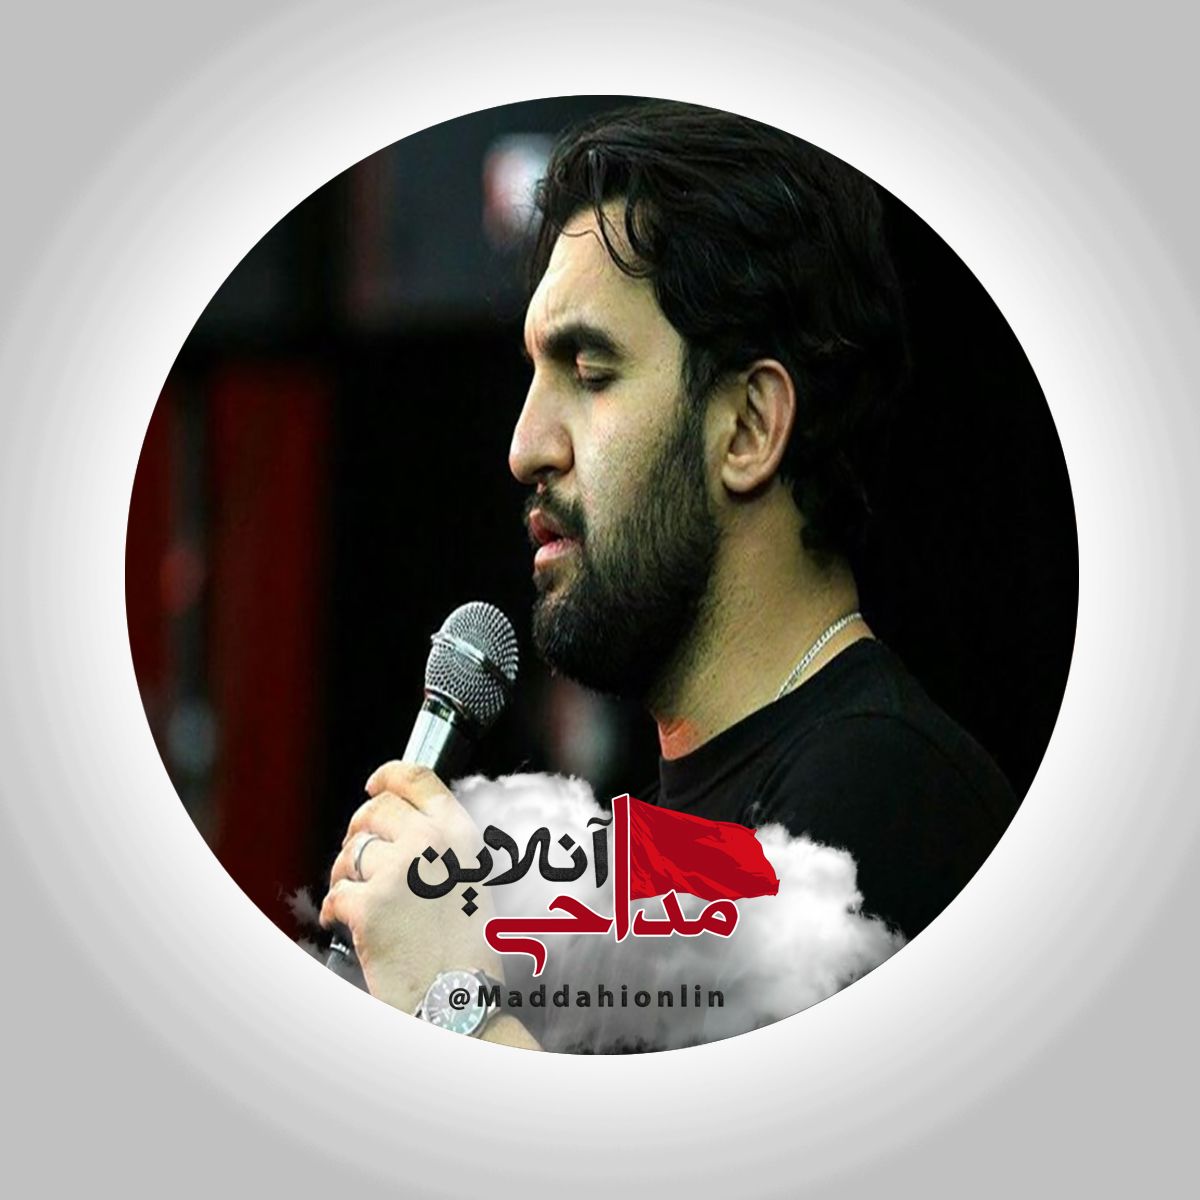 مداحی شهادت امام حسن مجتبی حمید علیمی | یک نت